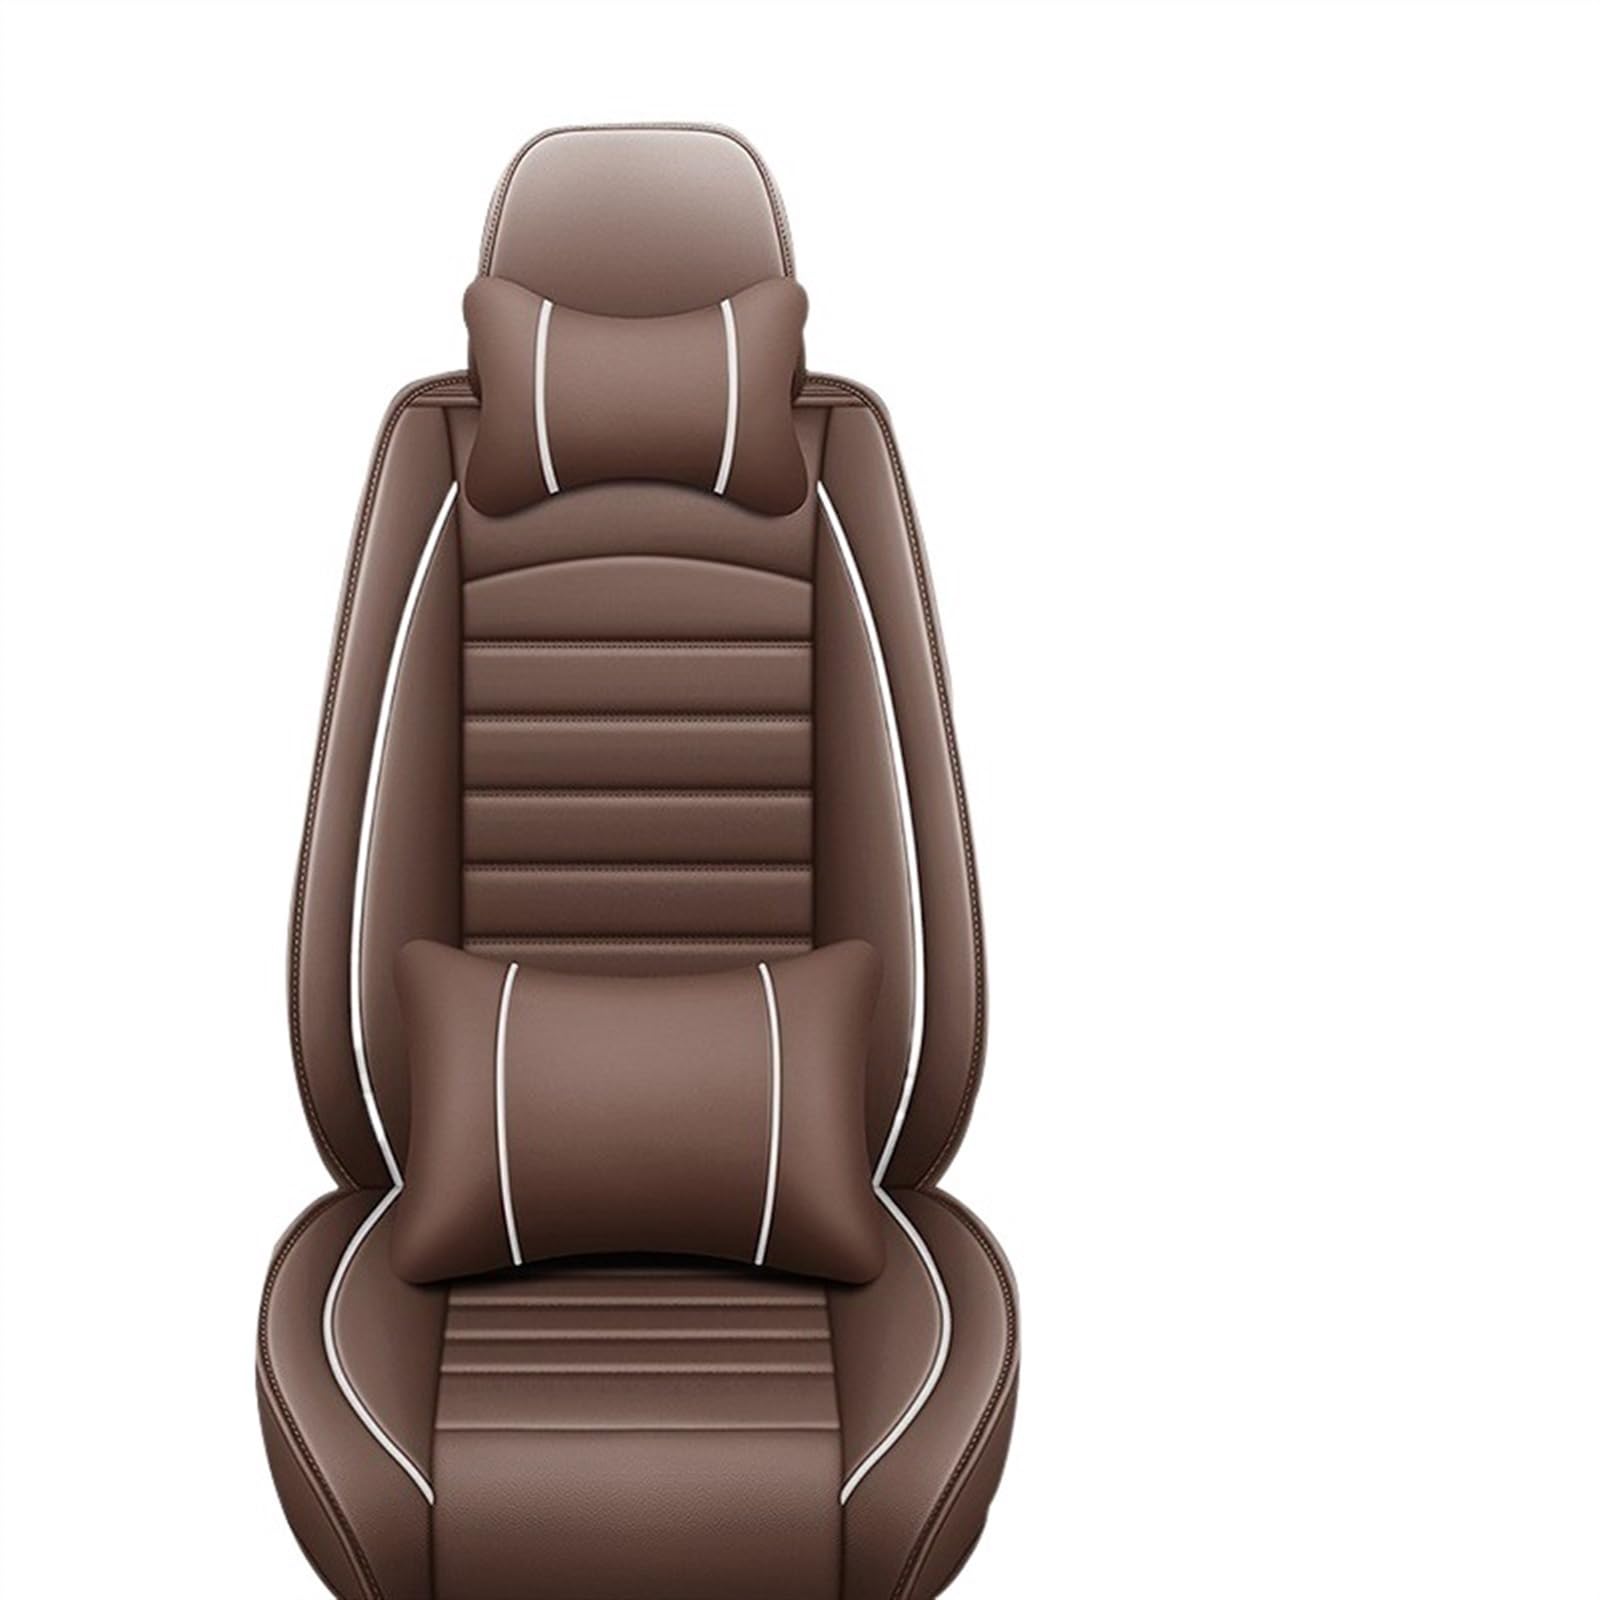 TATARENGS Automobilinnenraum Kompatibel Mit Q5 Q2 Q3 Q6 Q7 Q8 S1 S4 S5 S6 SQ5 RS3 RS4 RS5 Autositzbezug-Schutz, Waschbarer Vier-Jahreszeiten-Sitzbezug(with pillow,3) von TATARENGS